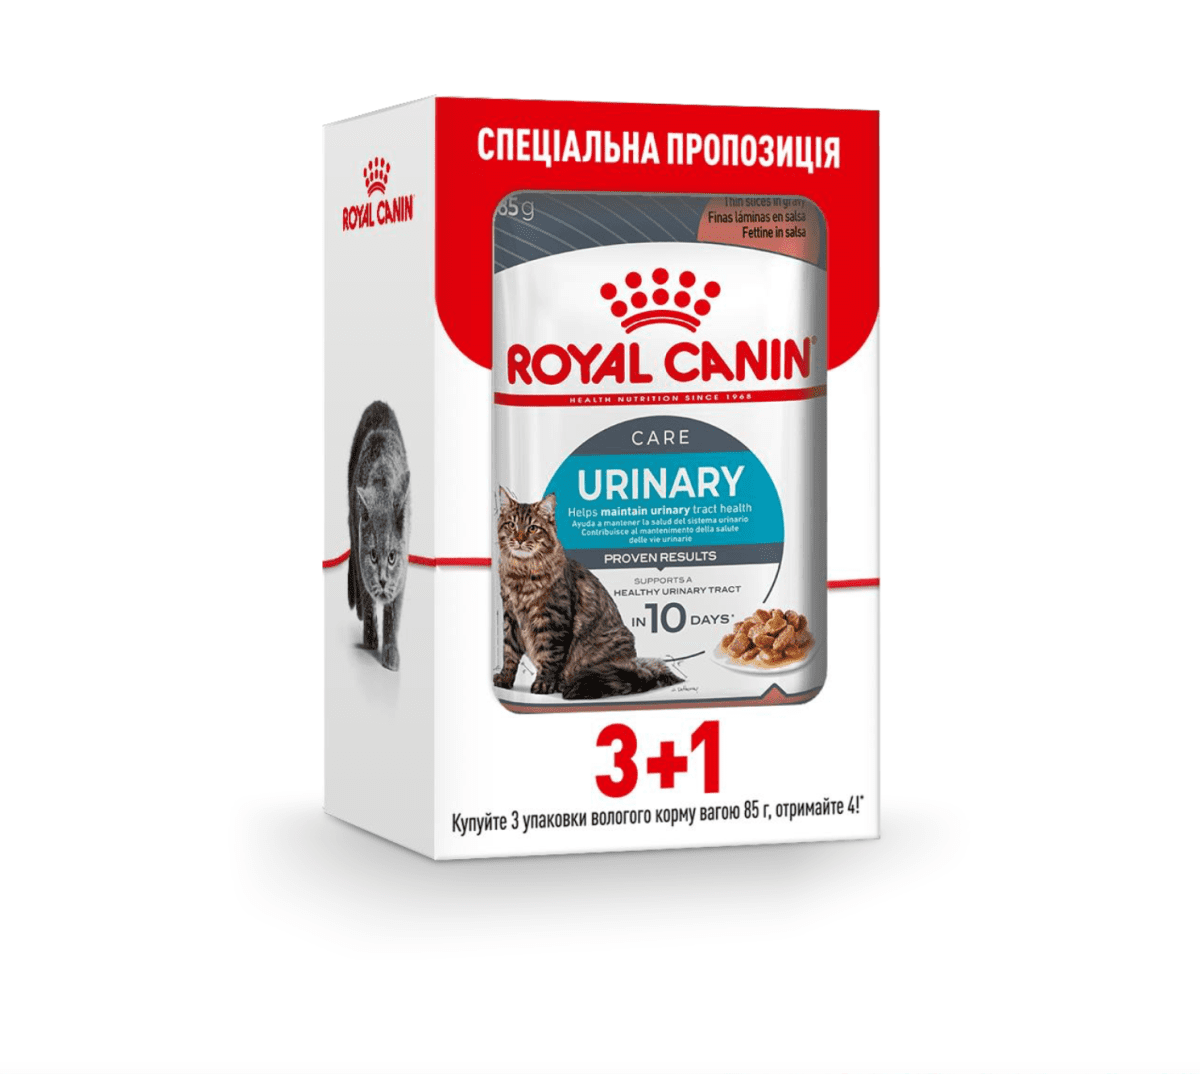 ROYAL CANIN URINARY CARE – влажный корм для взрослых котов для поддержания здоровья мочевыделительной системы